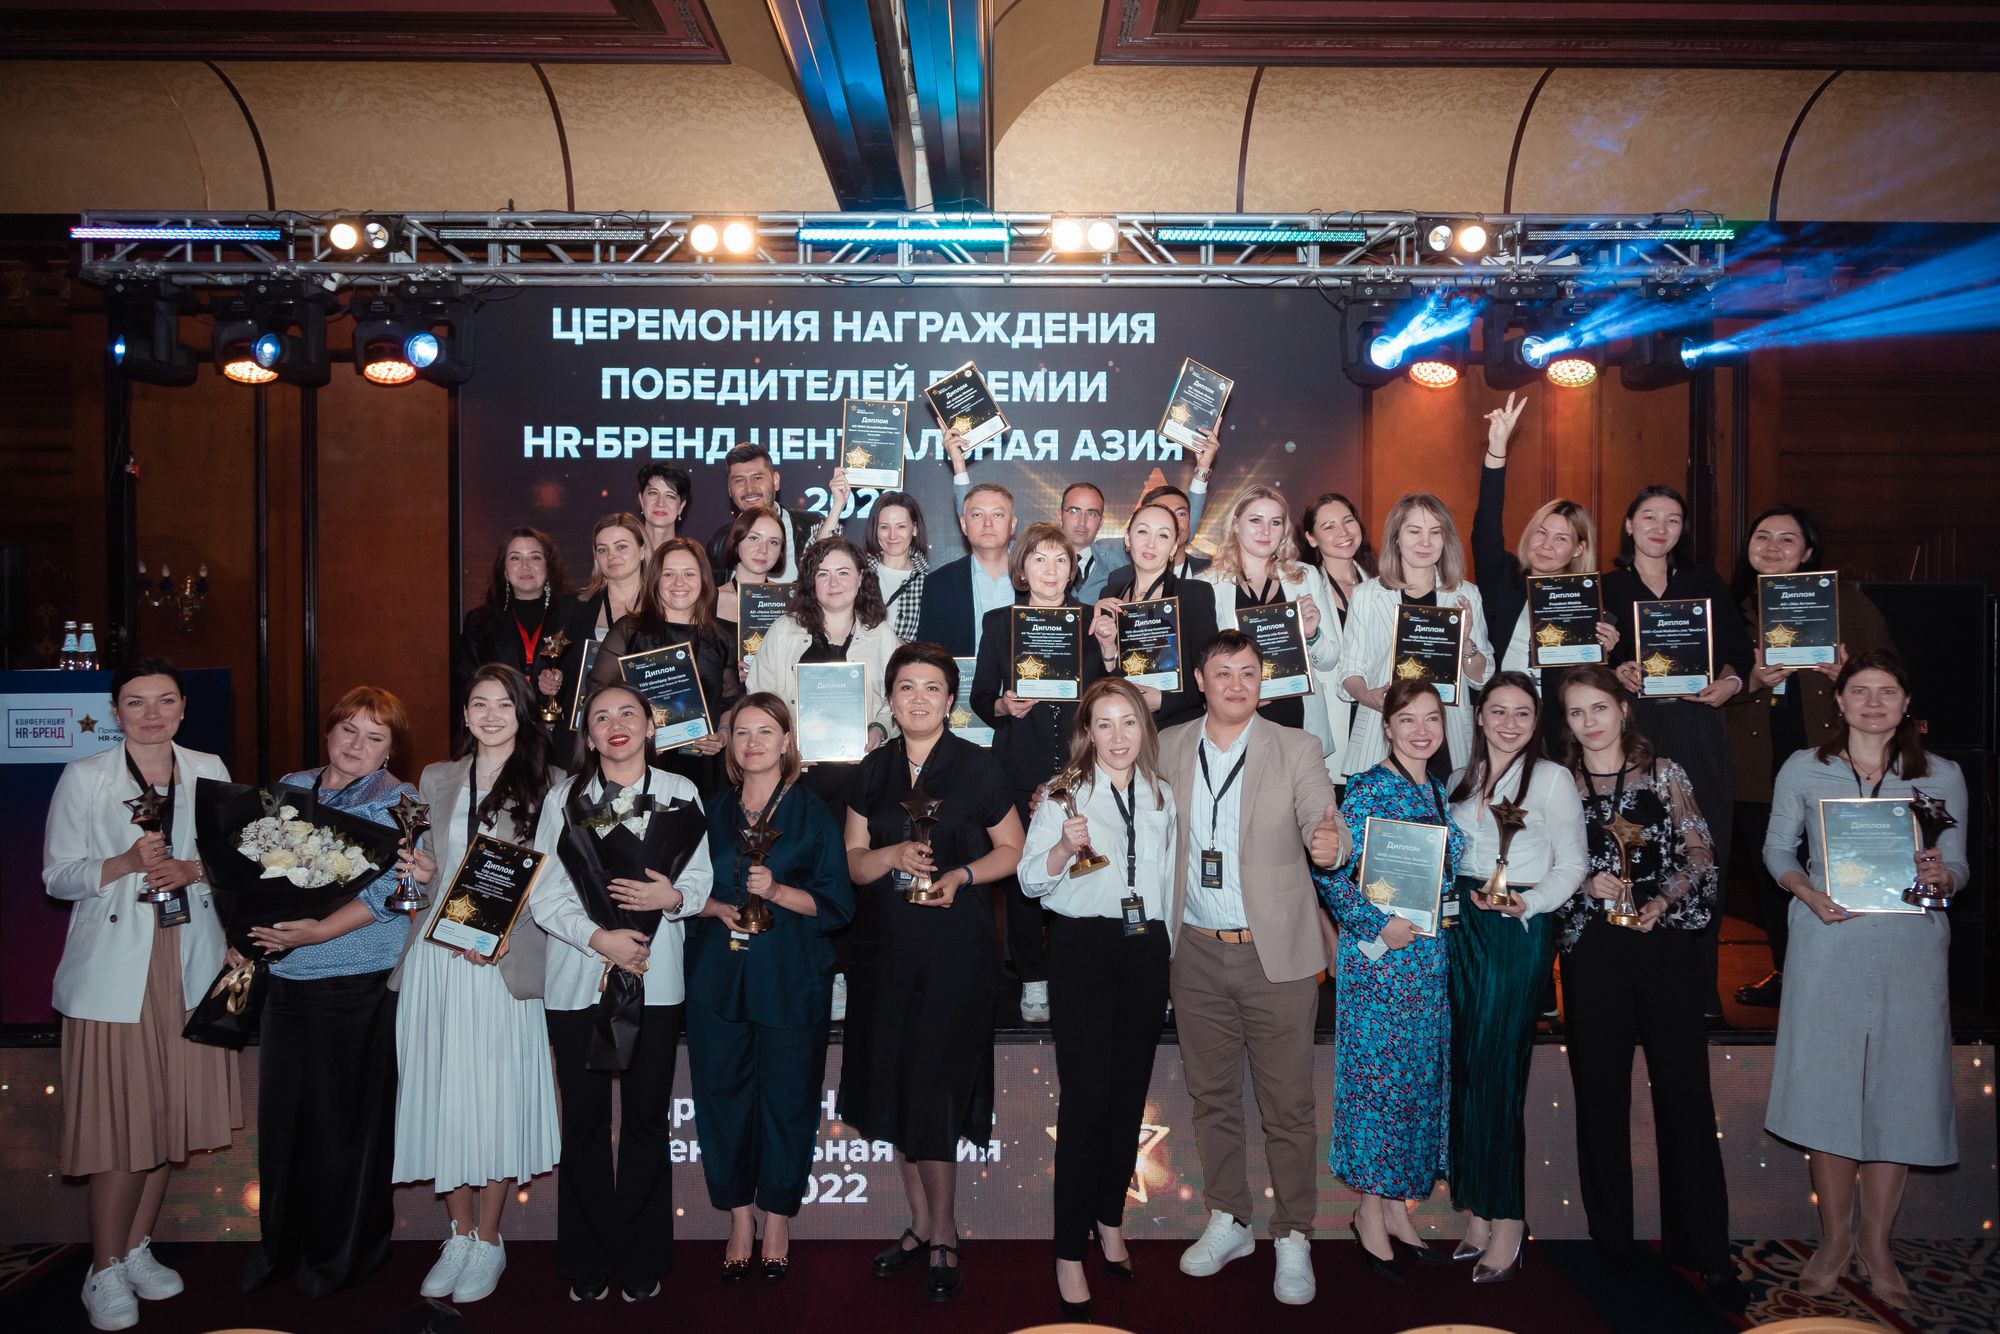 Забота, обучение и геймификация: победители премии HR-бренд Центральная Азия